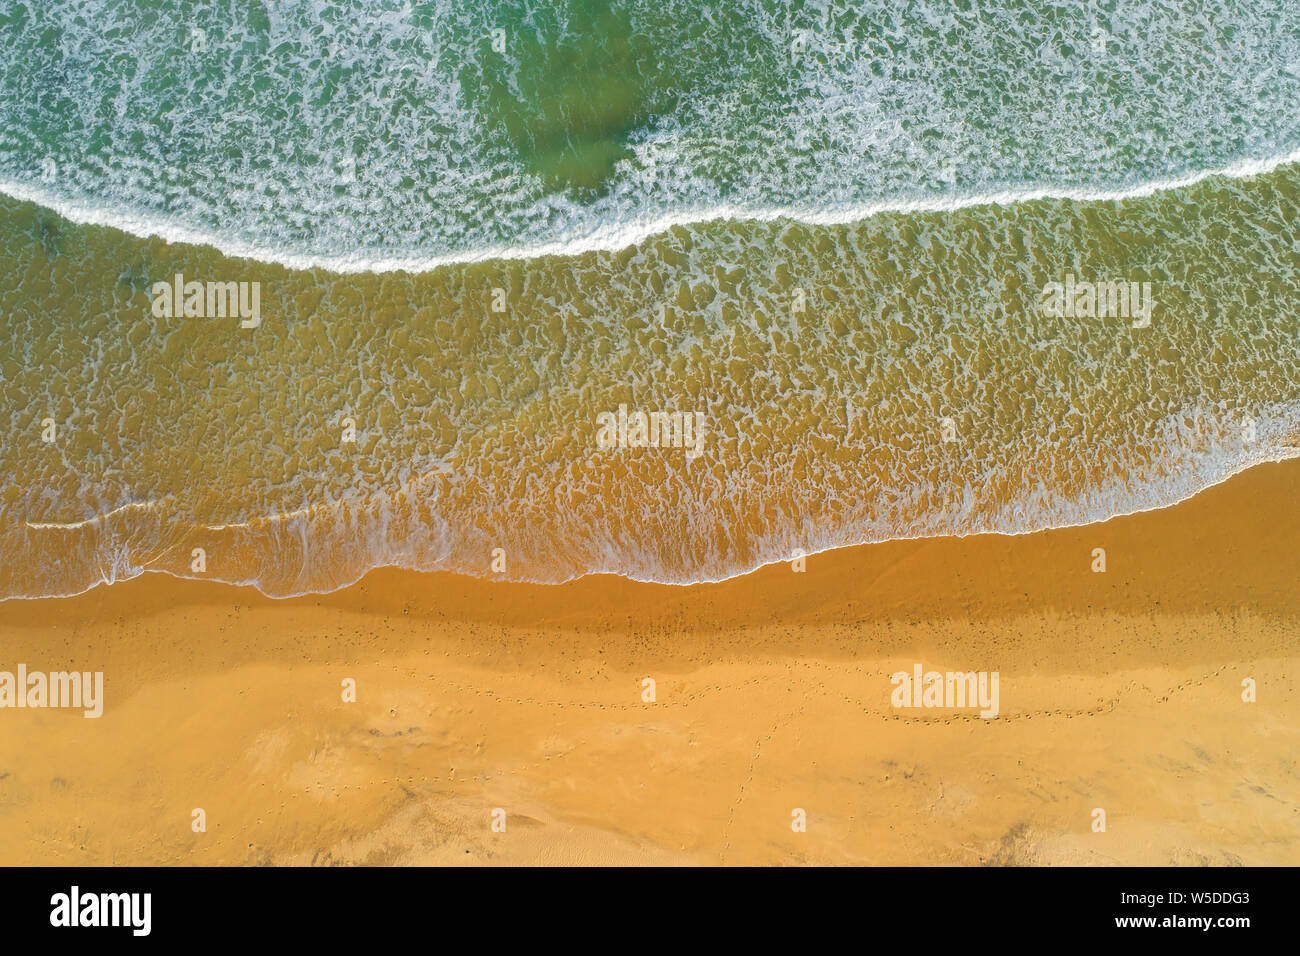 Vista aérea de las olas del mar en una playa de arena, en el sur de África Foto de stock